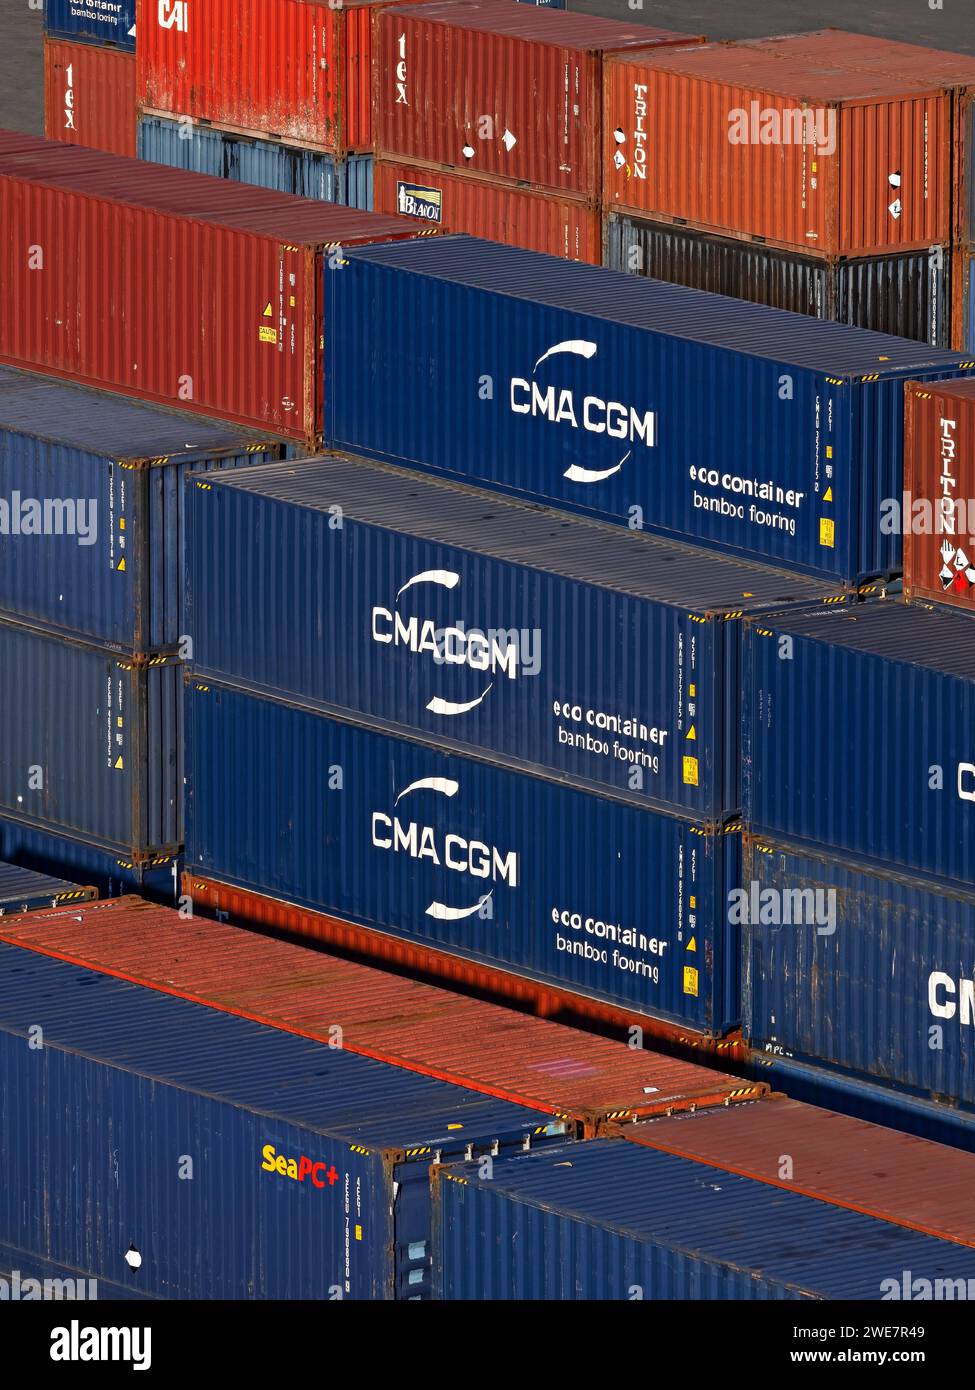 Industrie maritime / conteneurs maritimes empilés dans le port de Nouméa, Nouvelle-Calédonie. Banque D'Images